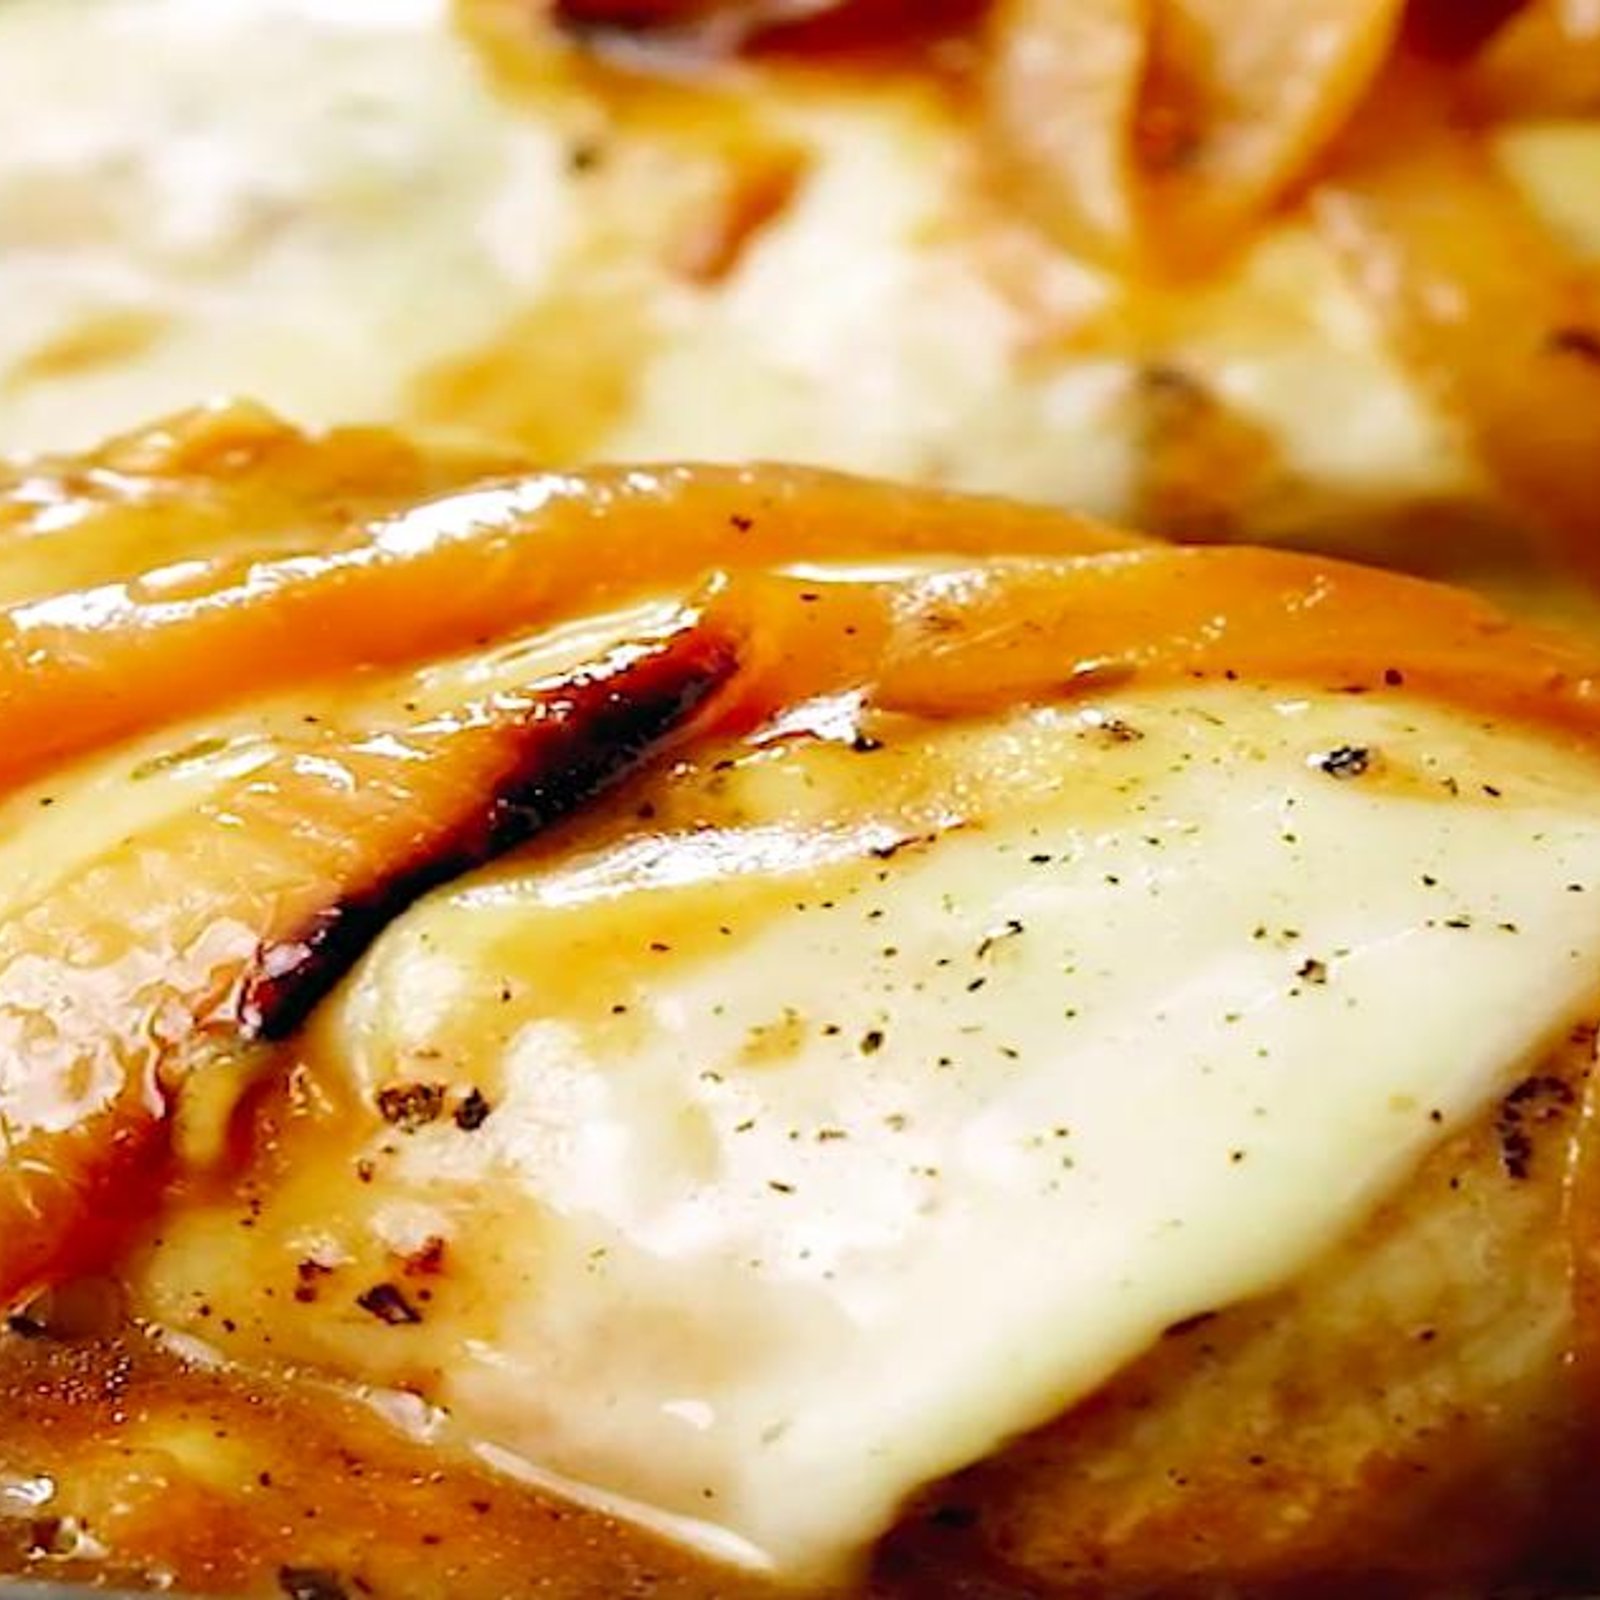 Poitrines de poulet, sauce aux oignons caramélisés et fromage fondu; la recette parfaite!